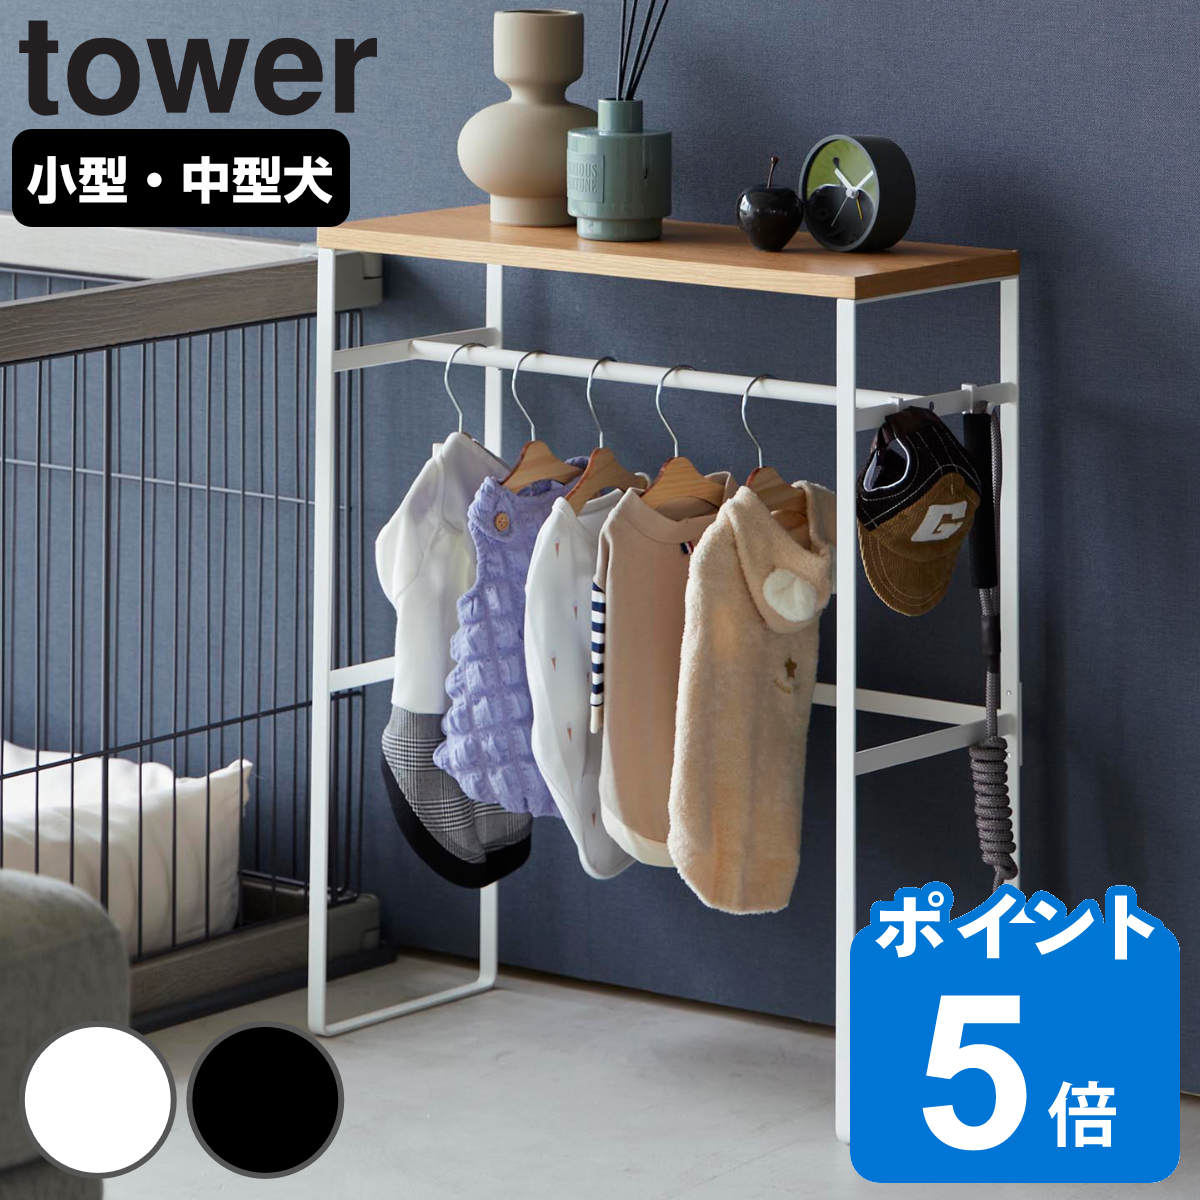 山崎実業 tower ペットコートハンガーラック タワー